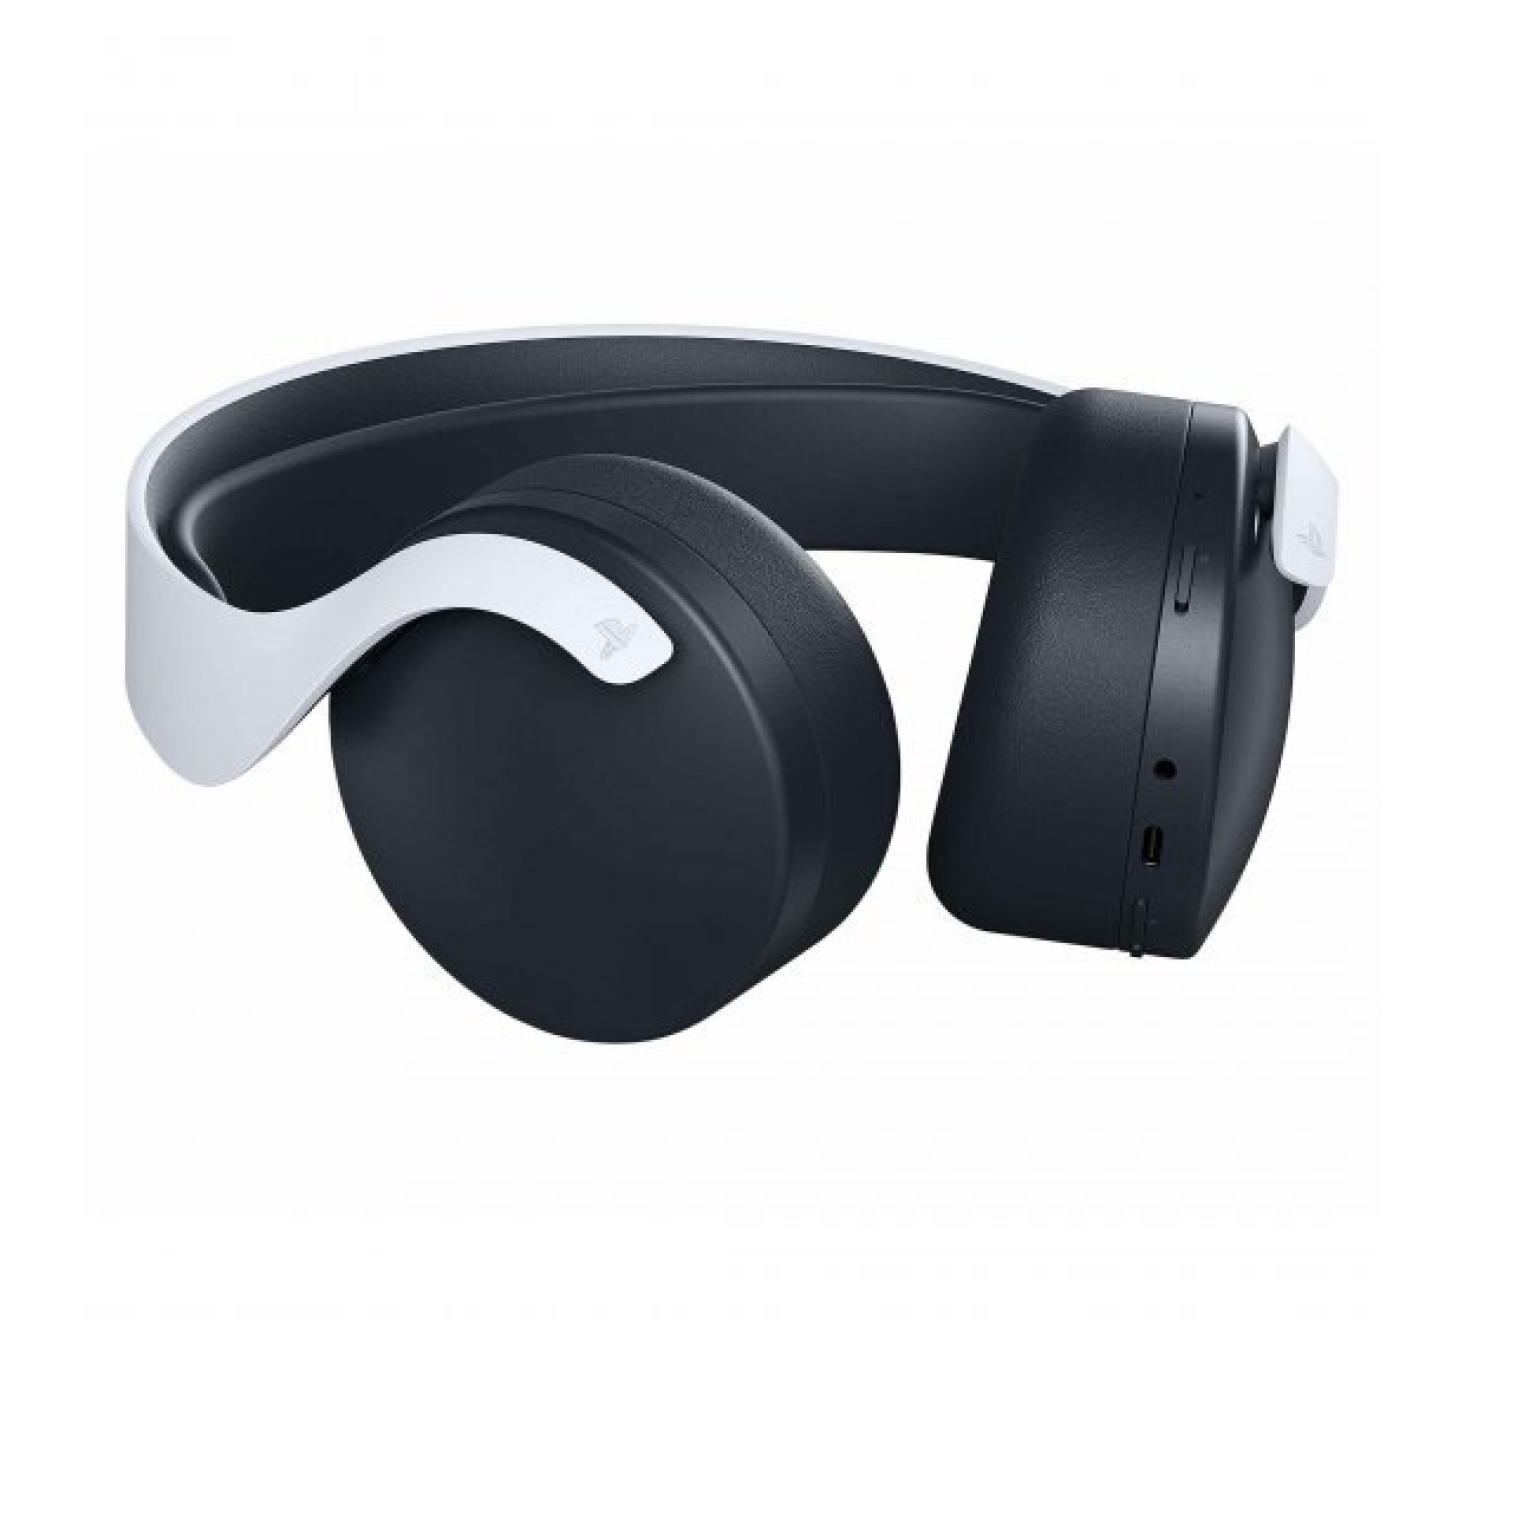 Pulse 3D Wireless Headset2